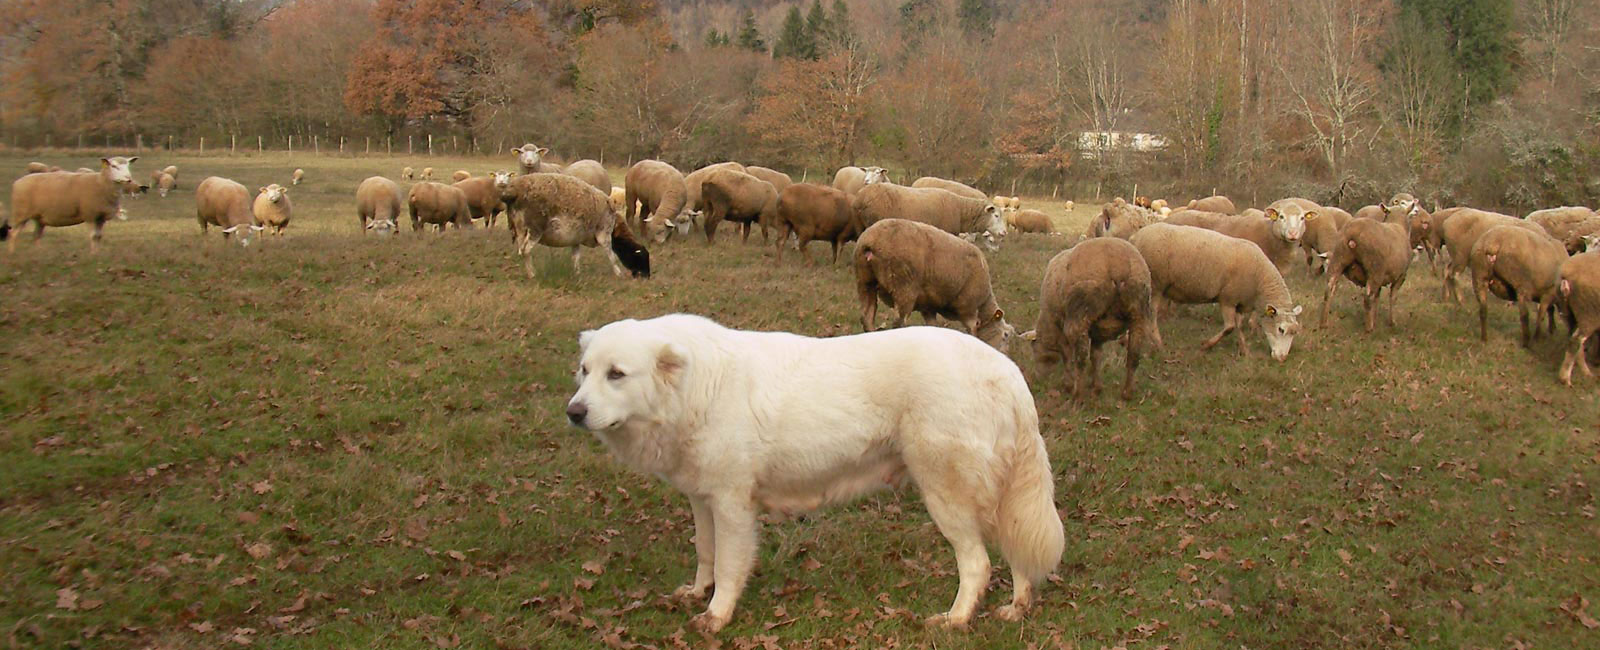 Ferme du Rouvet : élevage canin, caprin, ovin et avicole ; stages vivea